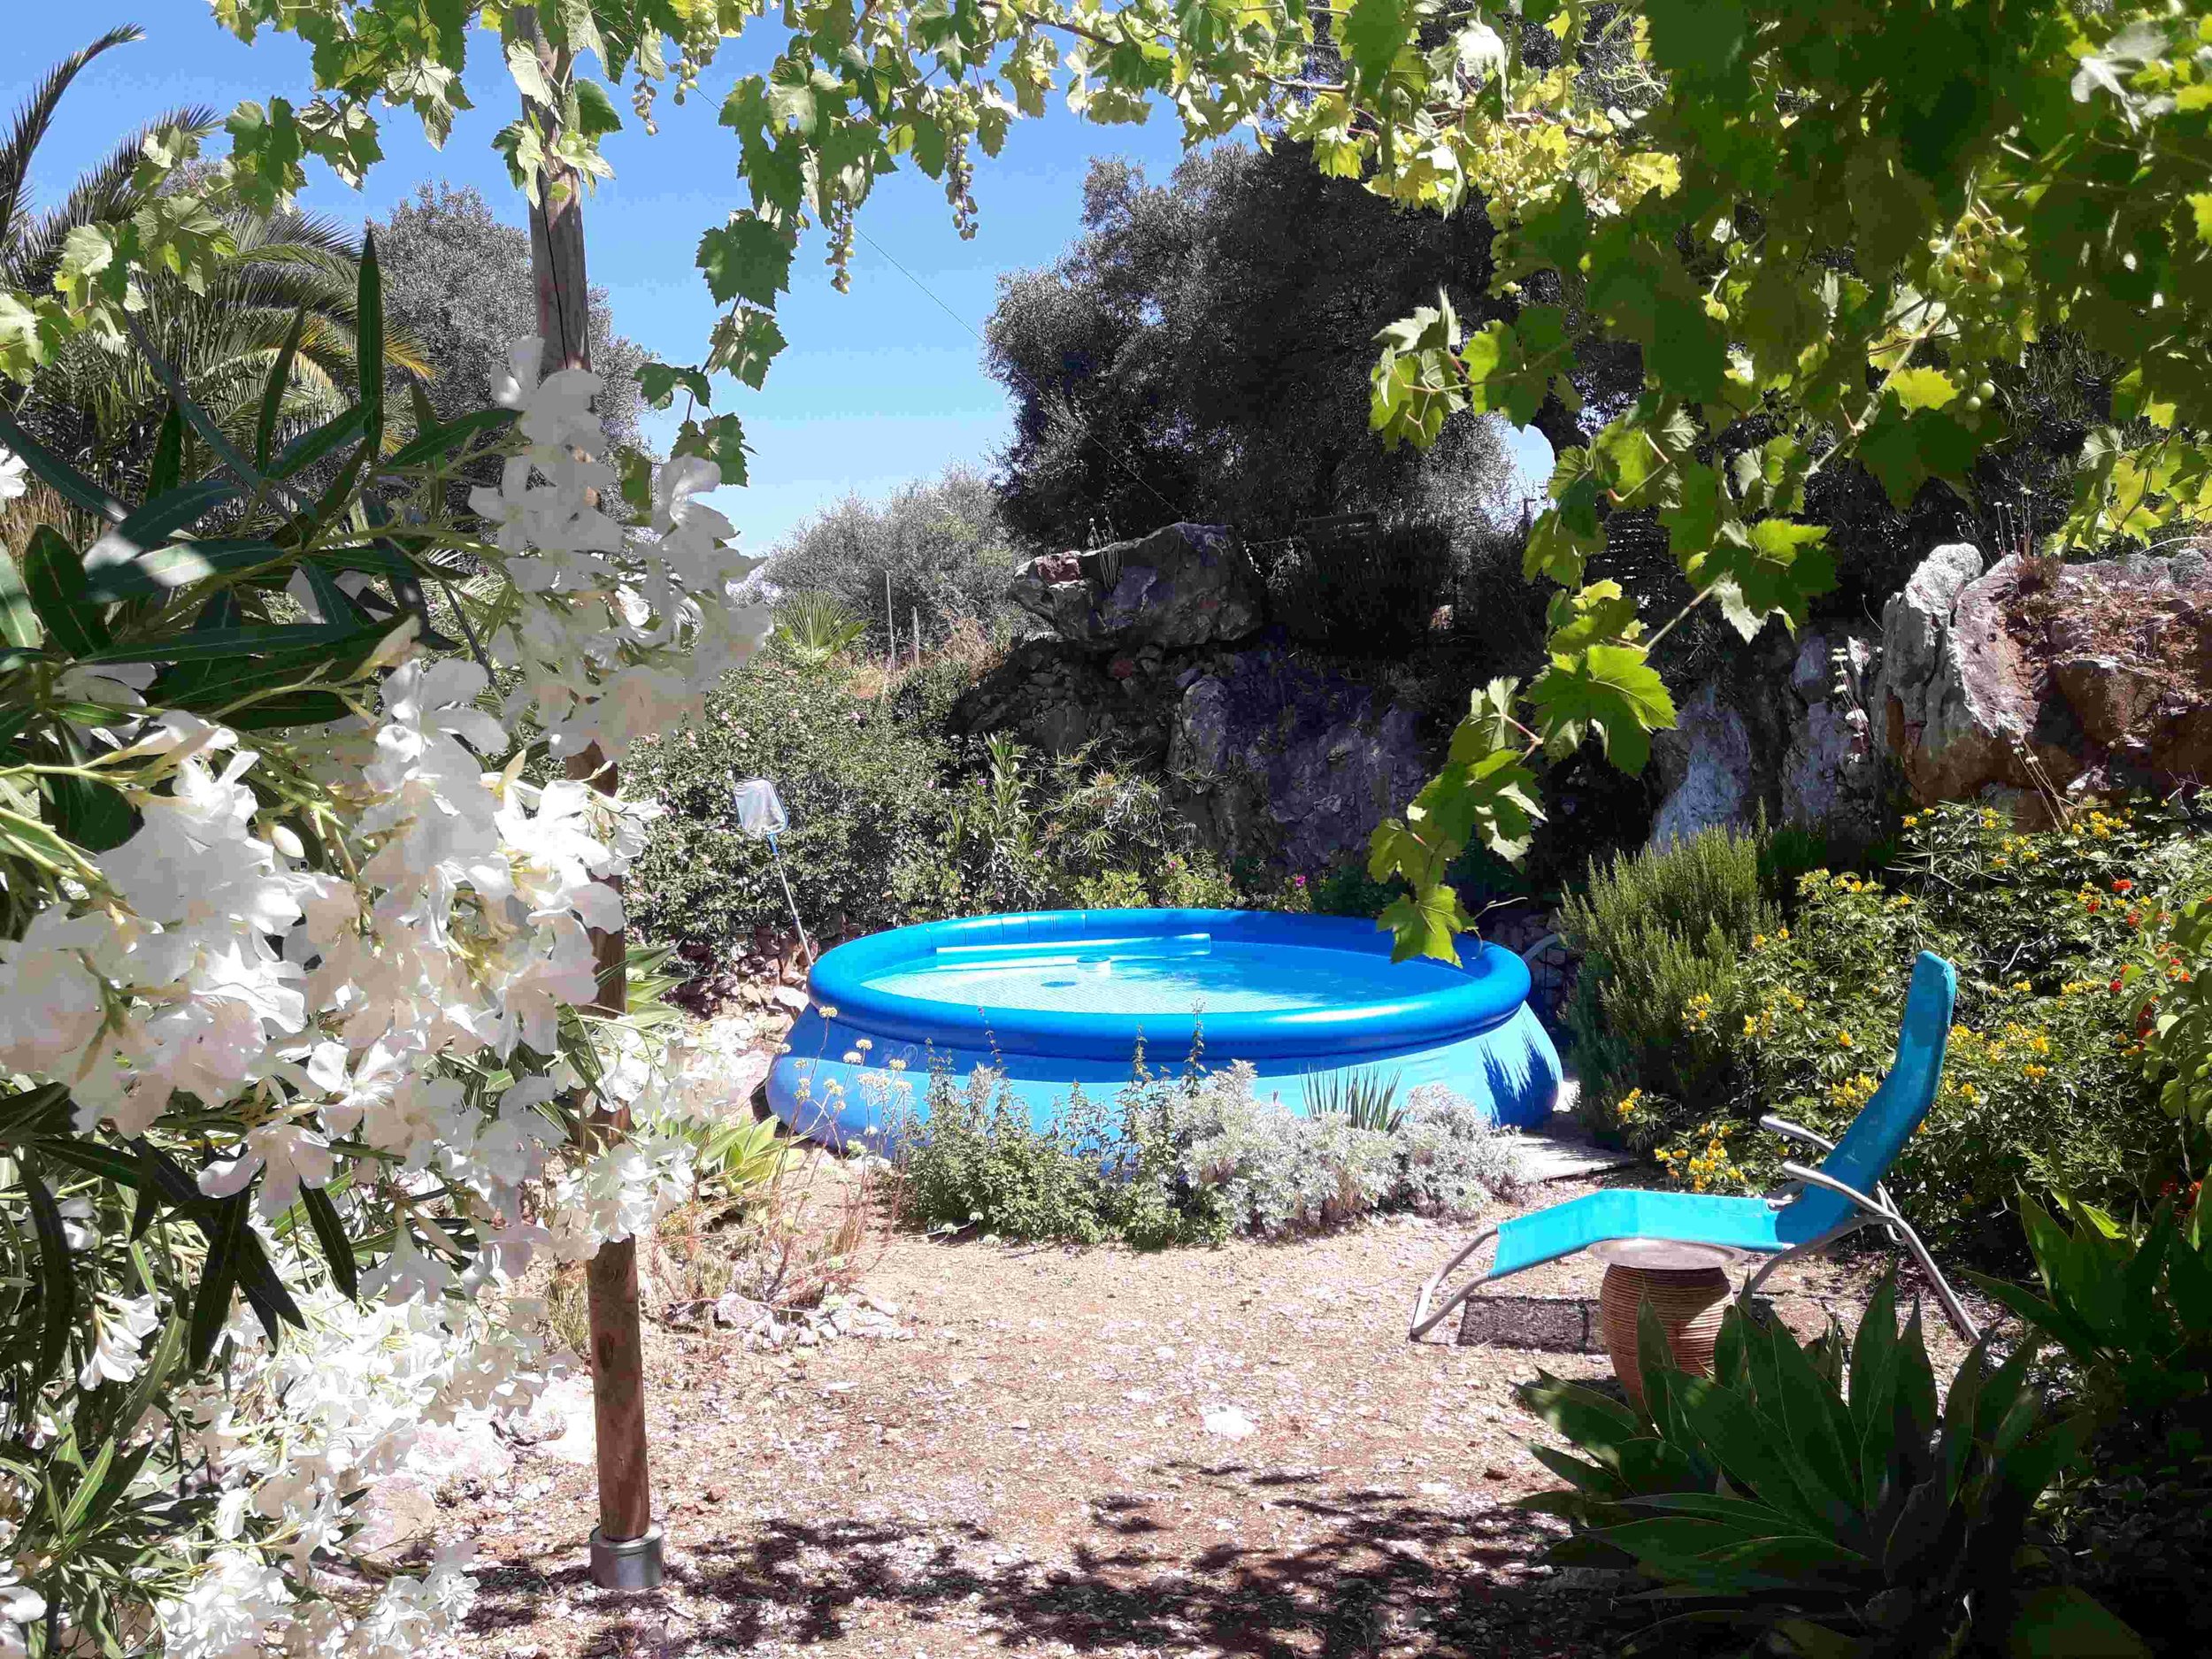 20210620_122838 pool +sunbed+white flowers 647 kb .jpg